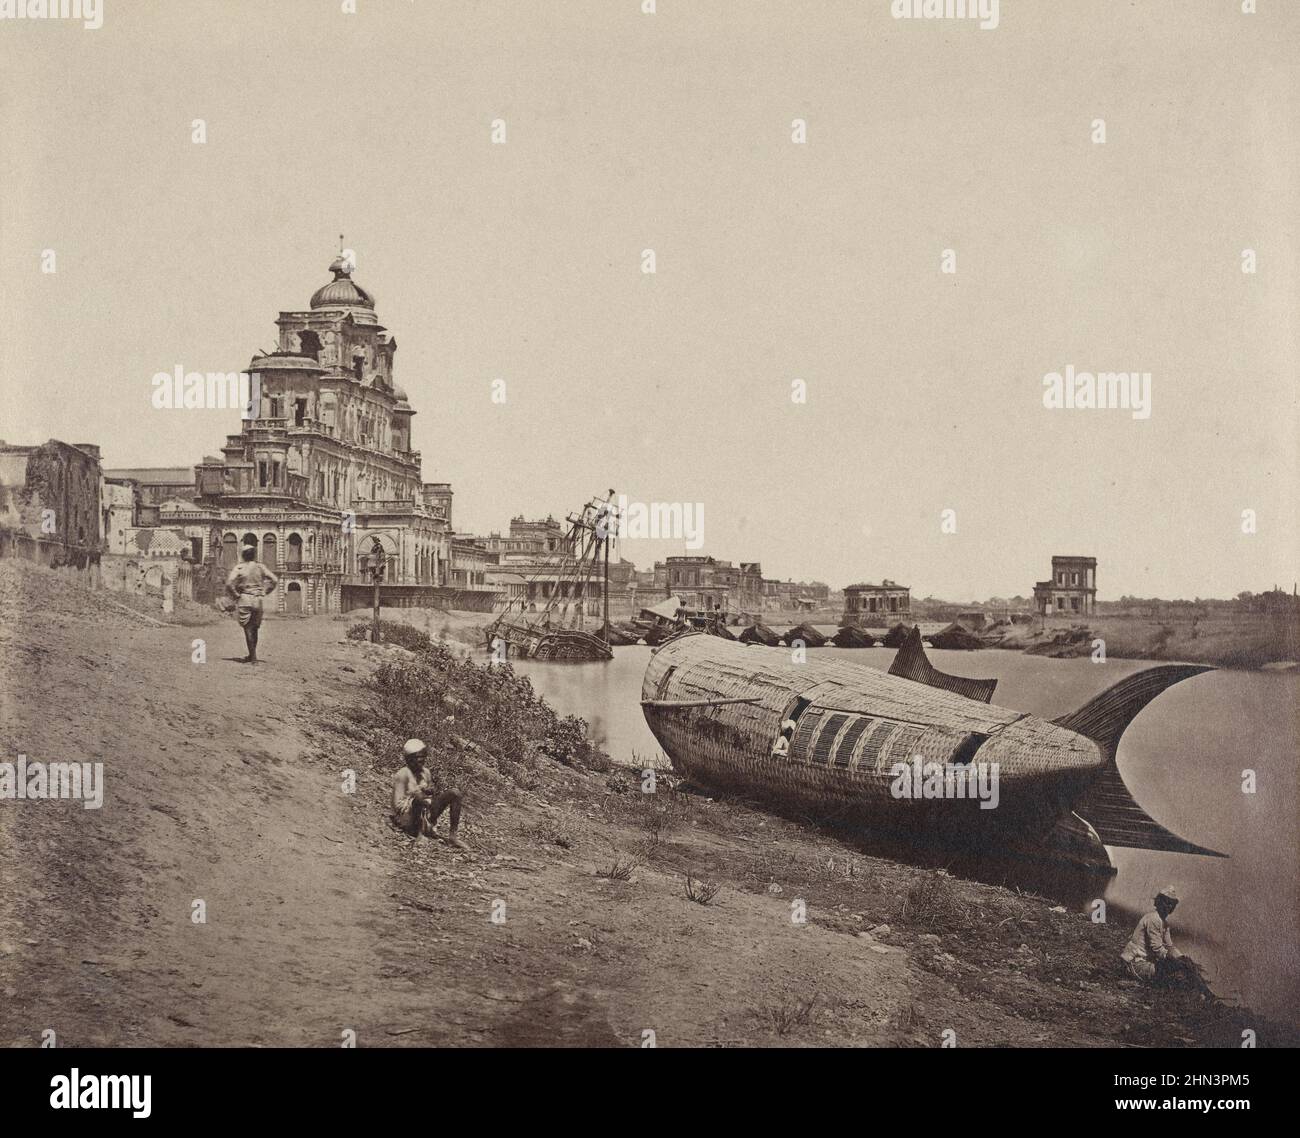 Il muro del palazzo Chattar Manzil a Lucknow, India, che è stato distrutto da mutineer durante la ribellione indiana del 1857 (noto anche come il Mutiny Sepoy Foto Stock